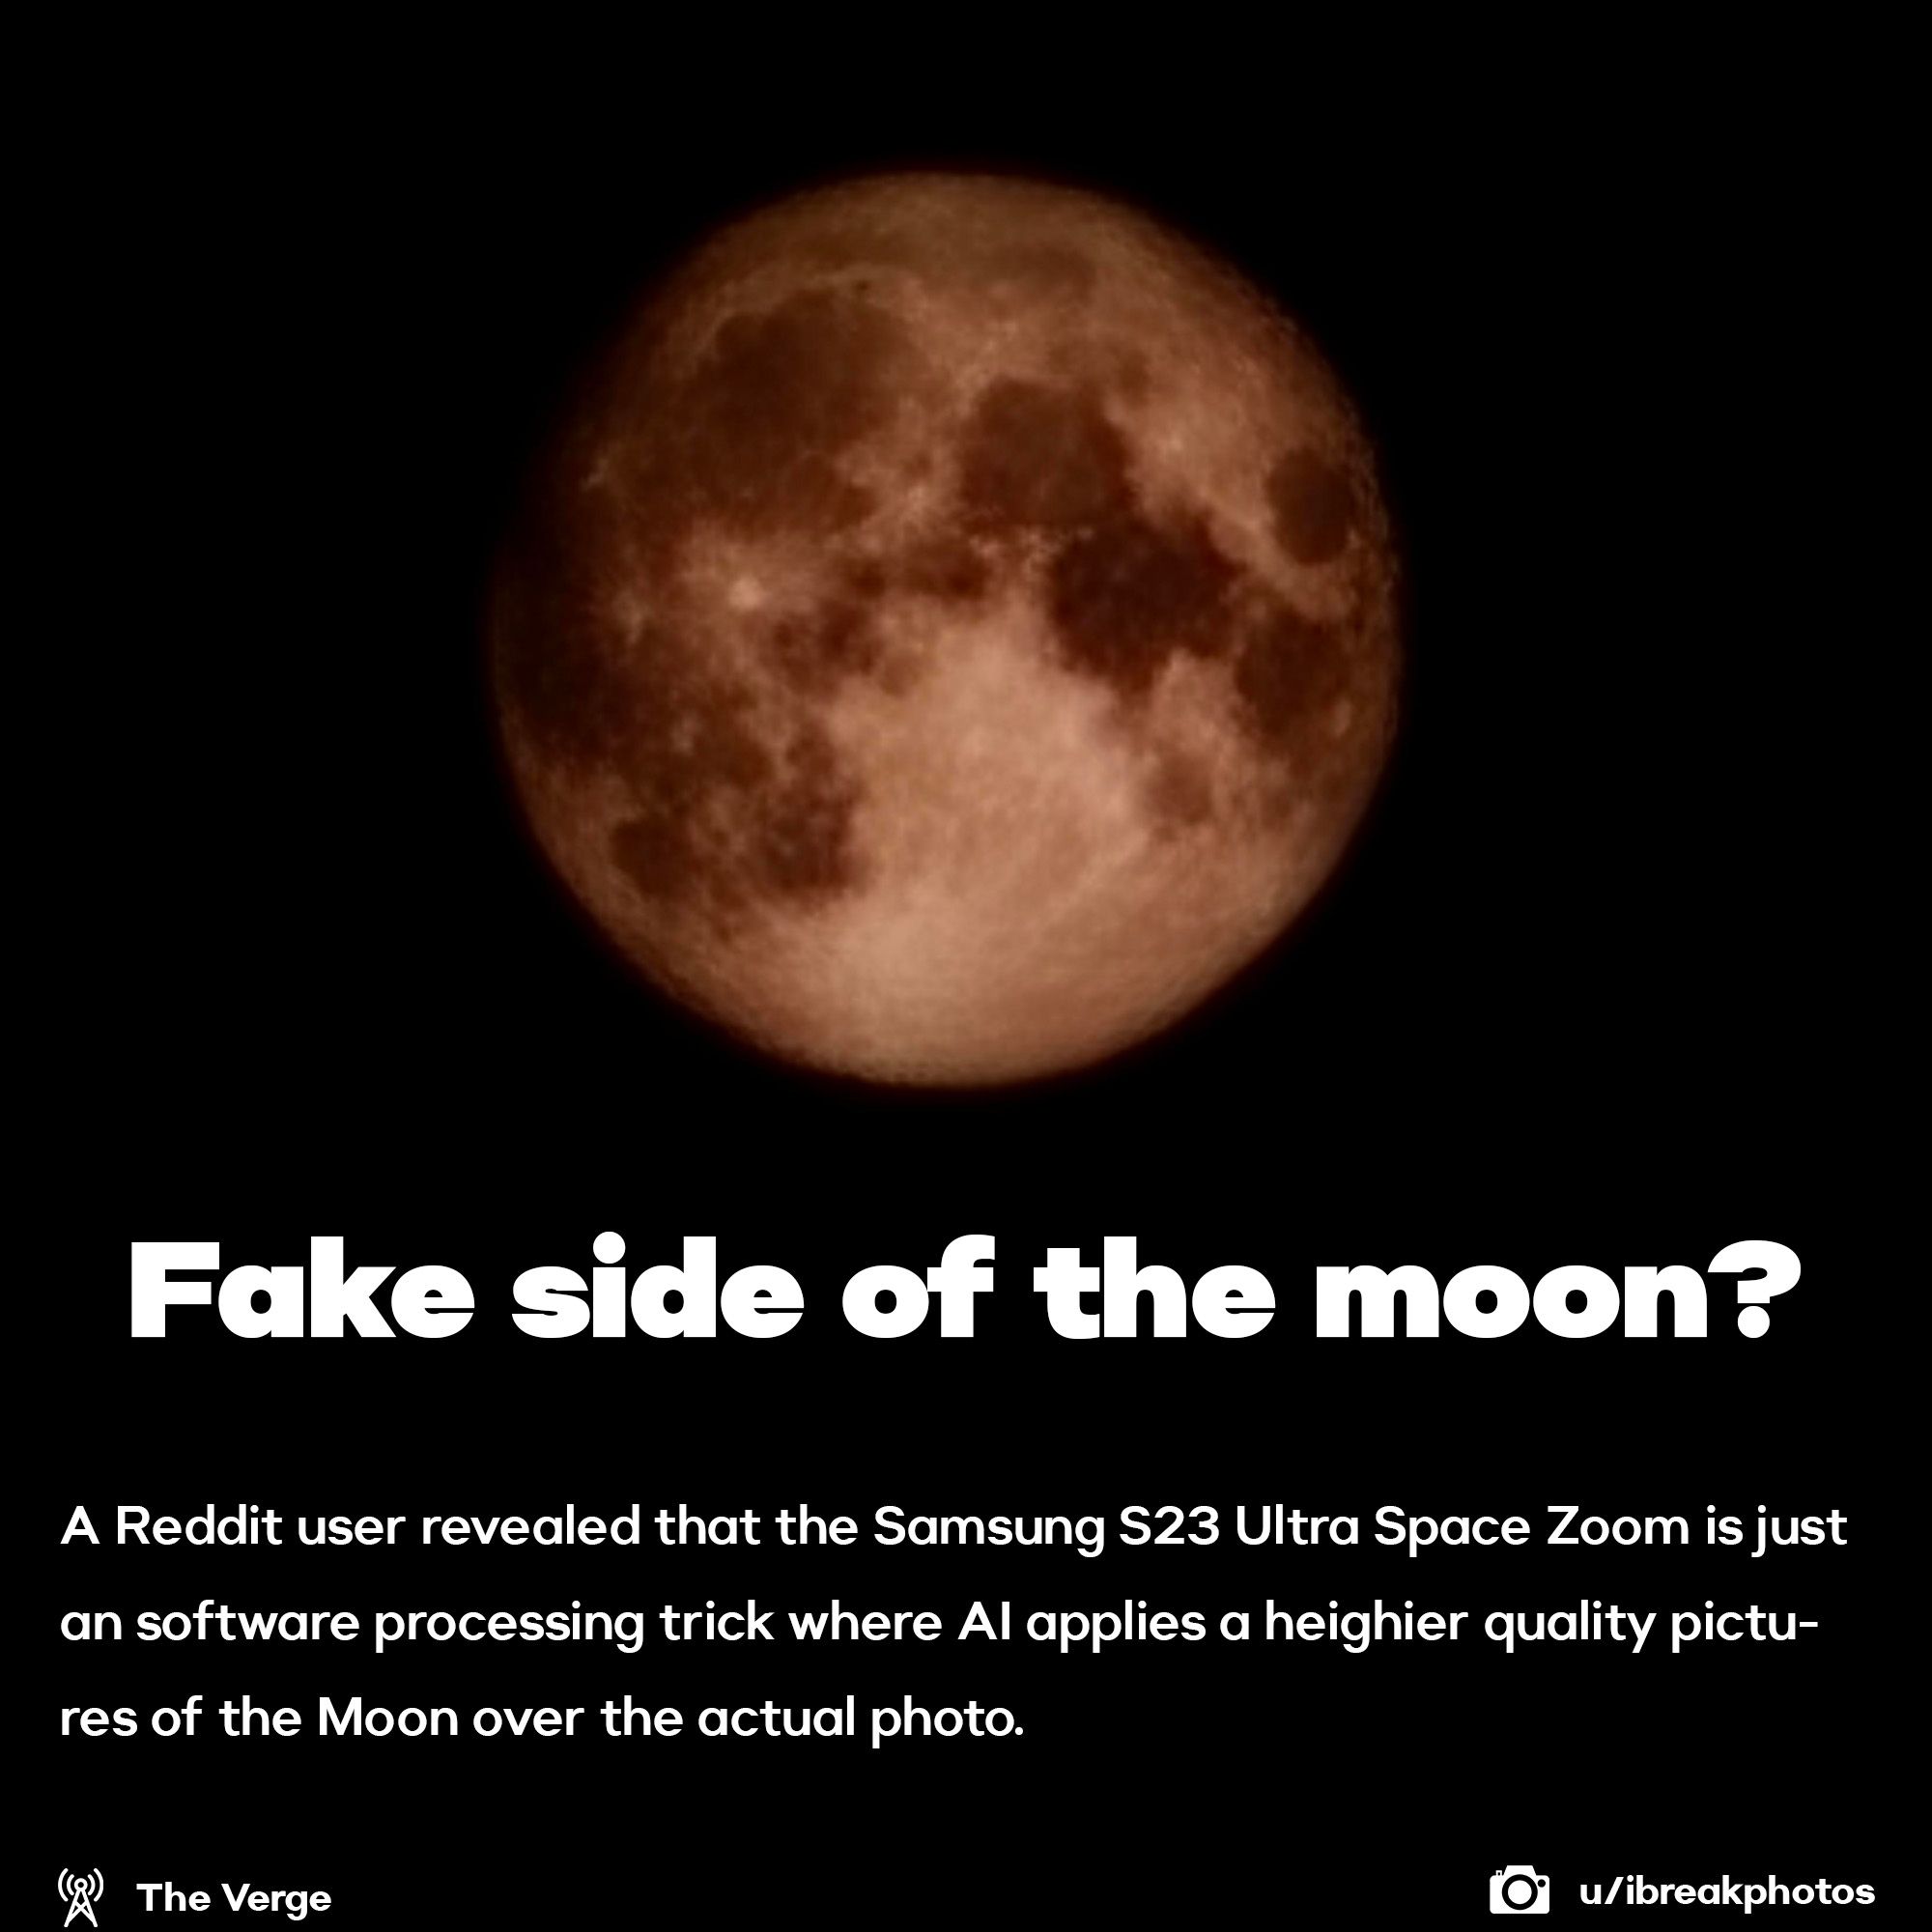 Samsung Fakes Moon Photos?